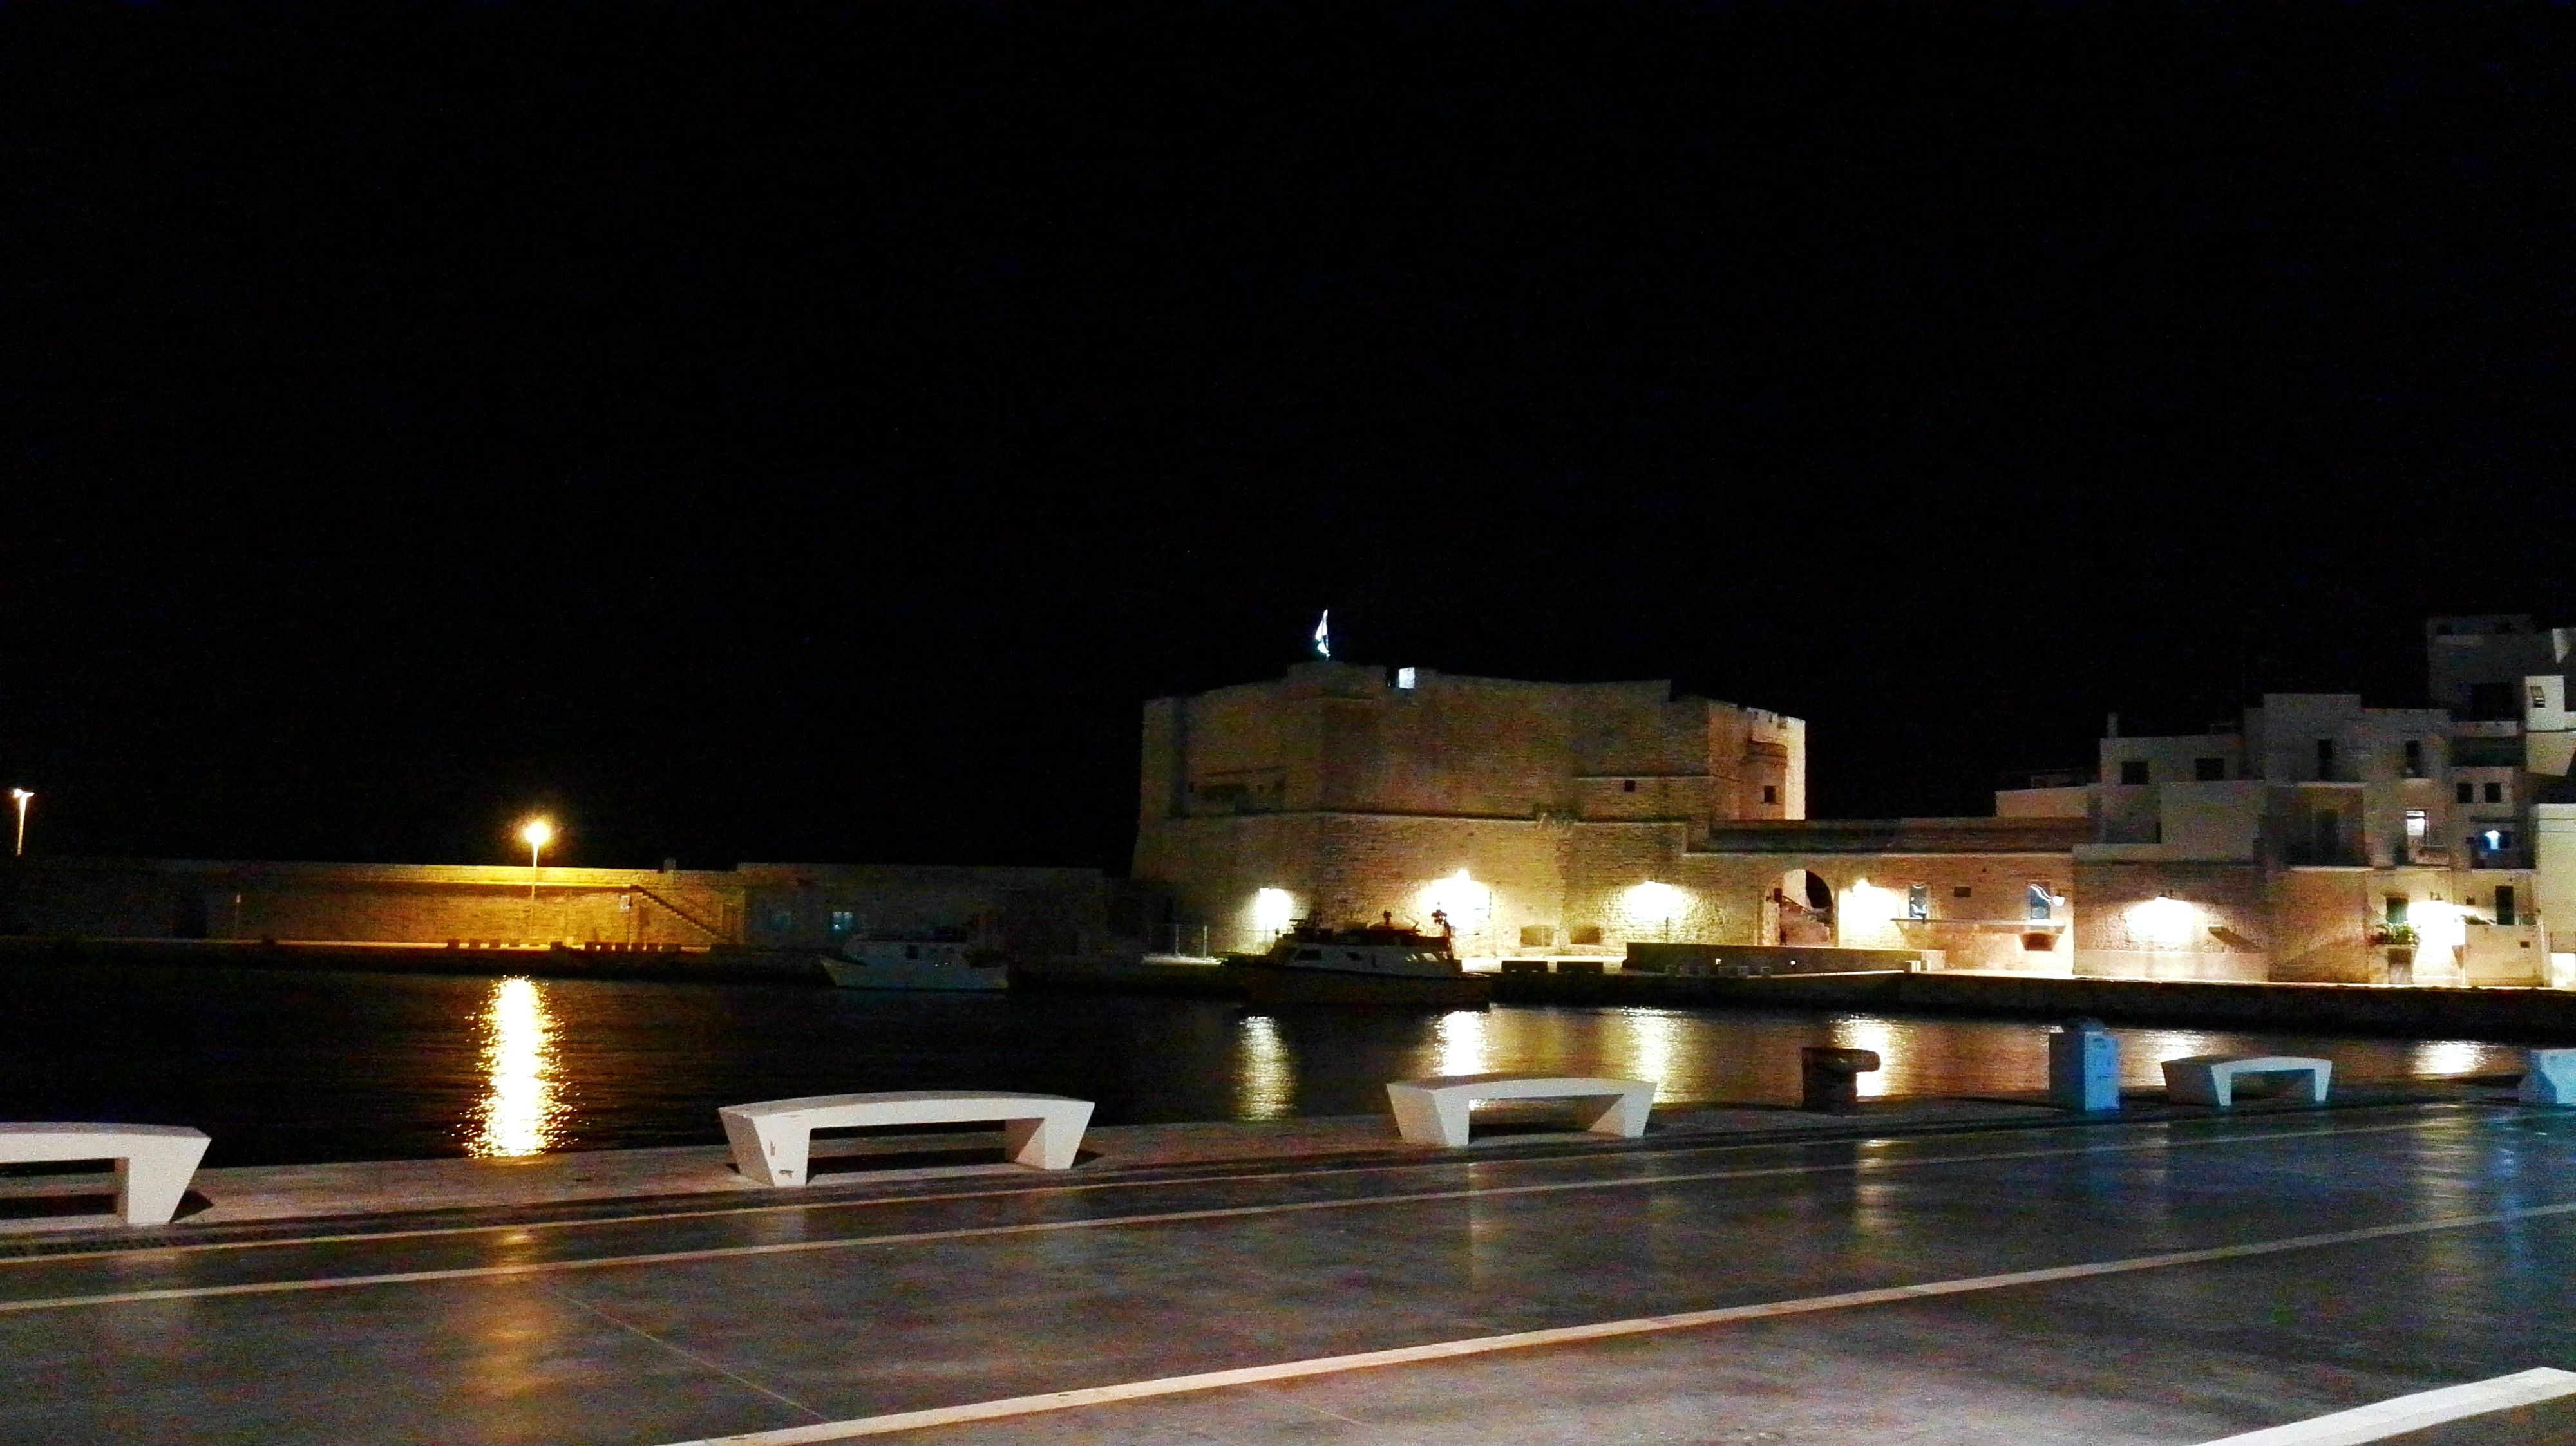 Monopoli Castle, Puglia